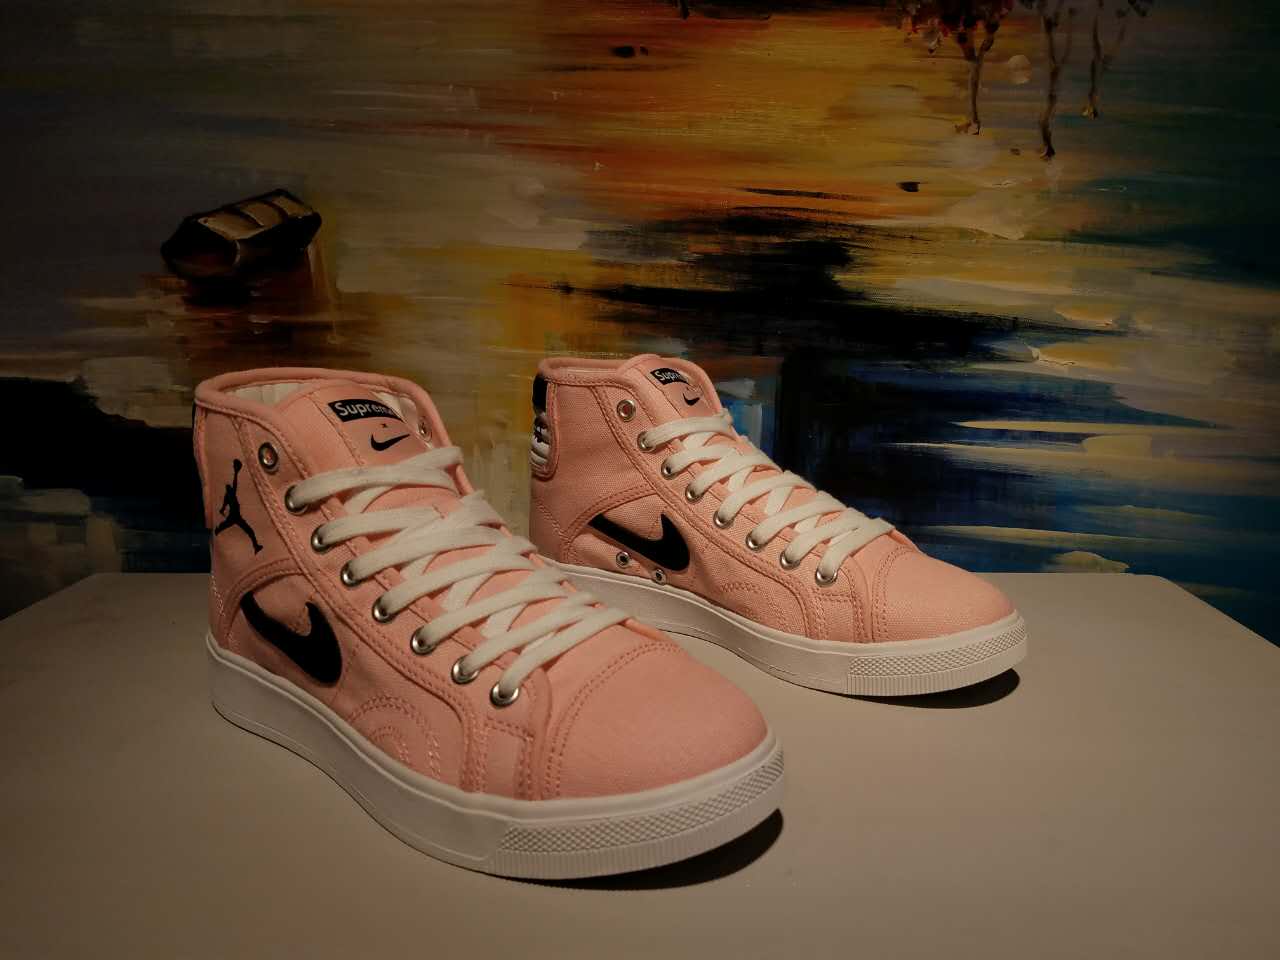 Original Air Jordan High Pink Shoes - Click Image to Close